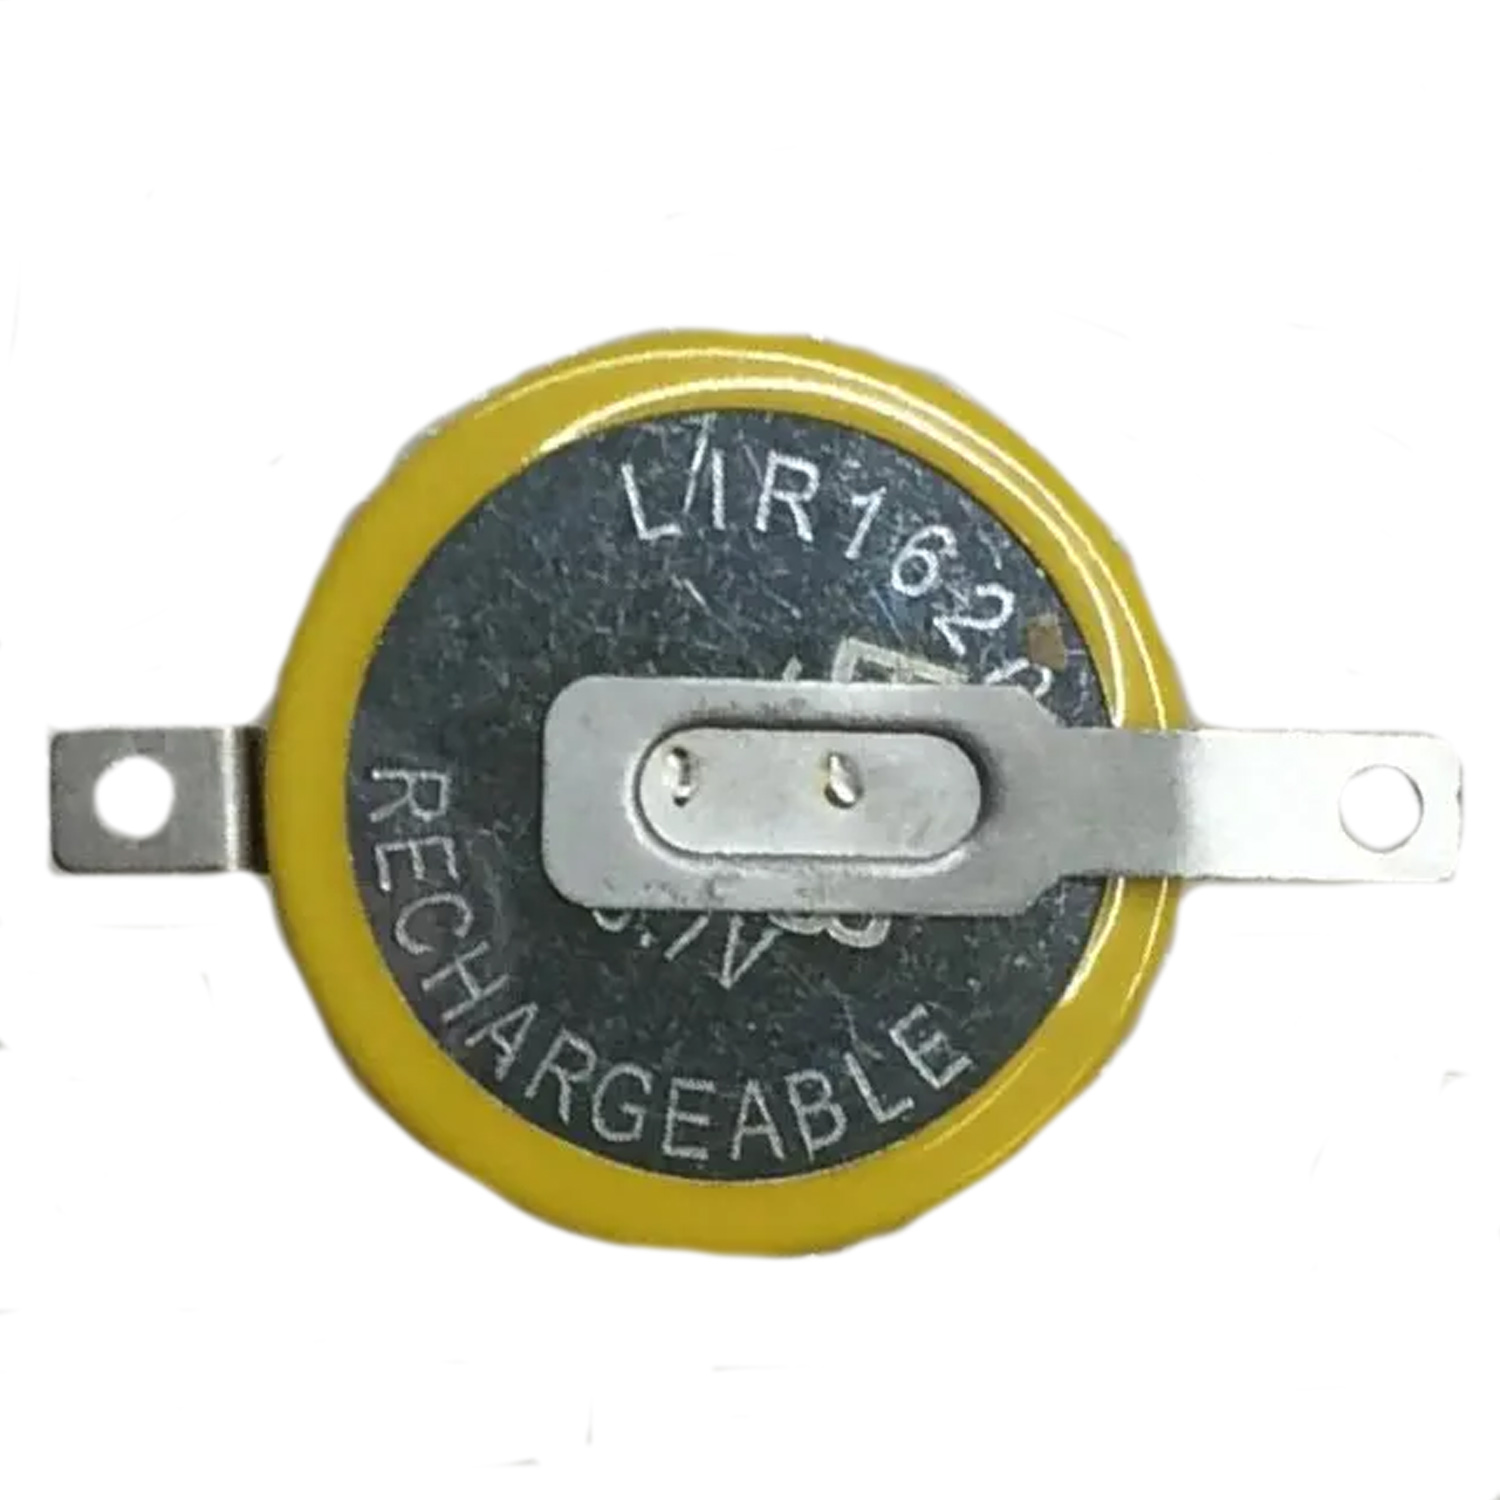 Аккумулятор литиевый LIR1620-LBY2, фото